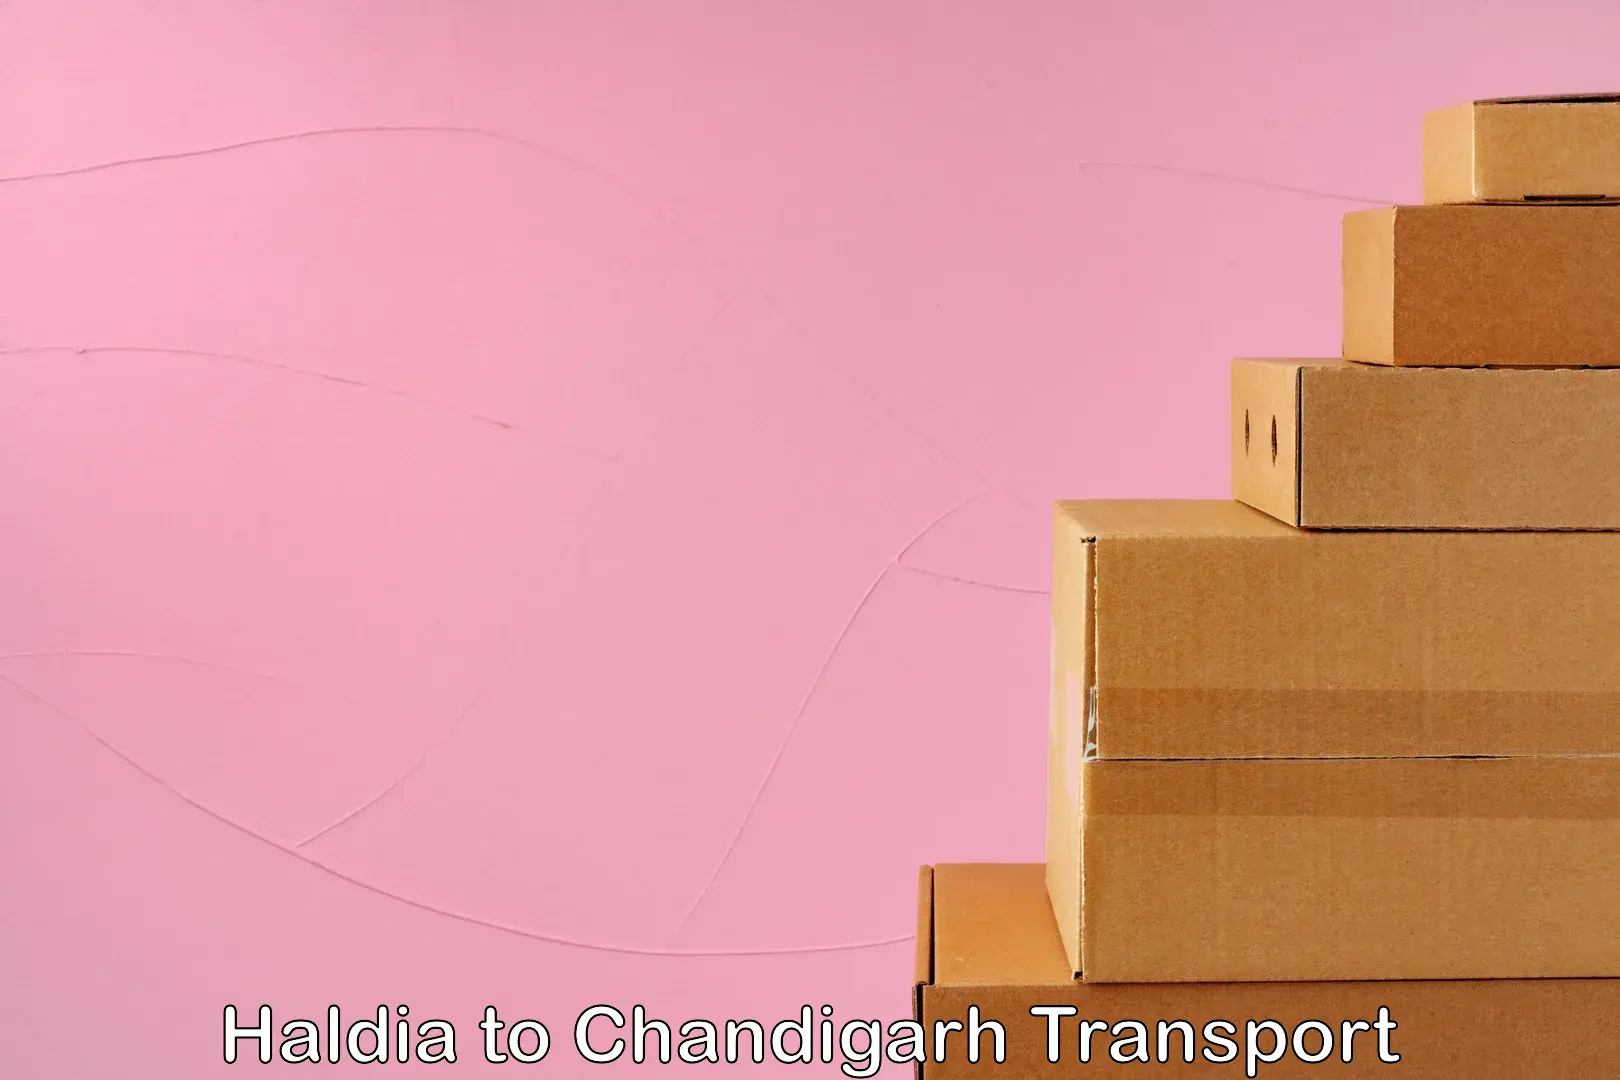 Online transport service Haldia to Chandigarh